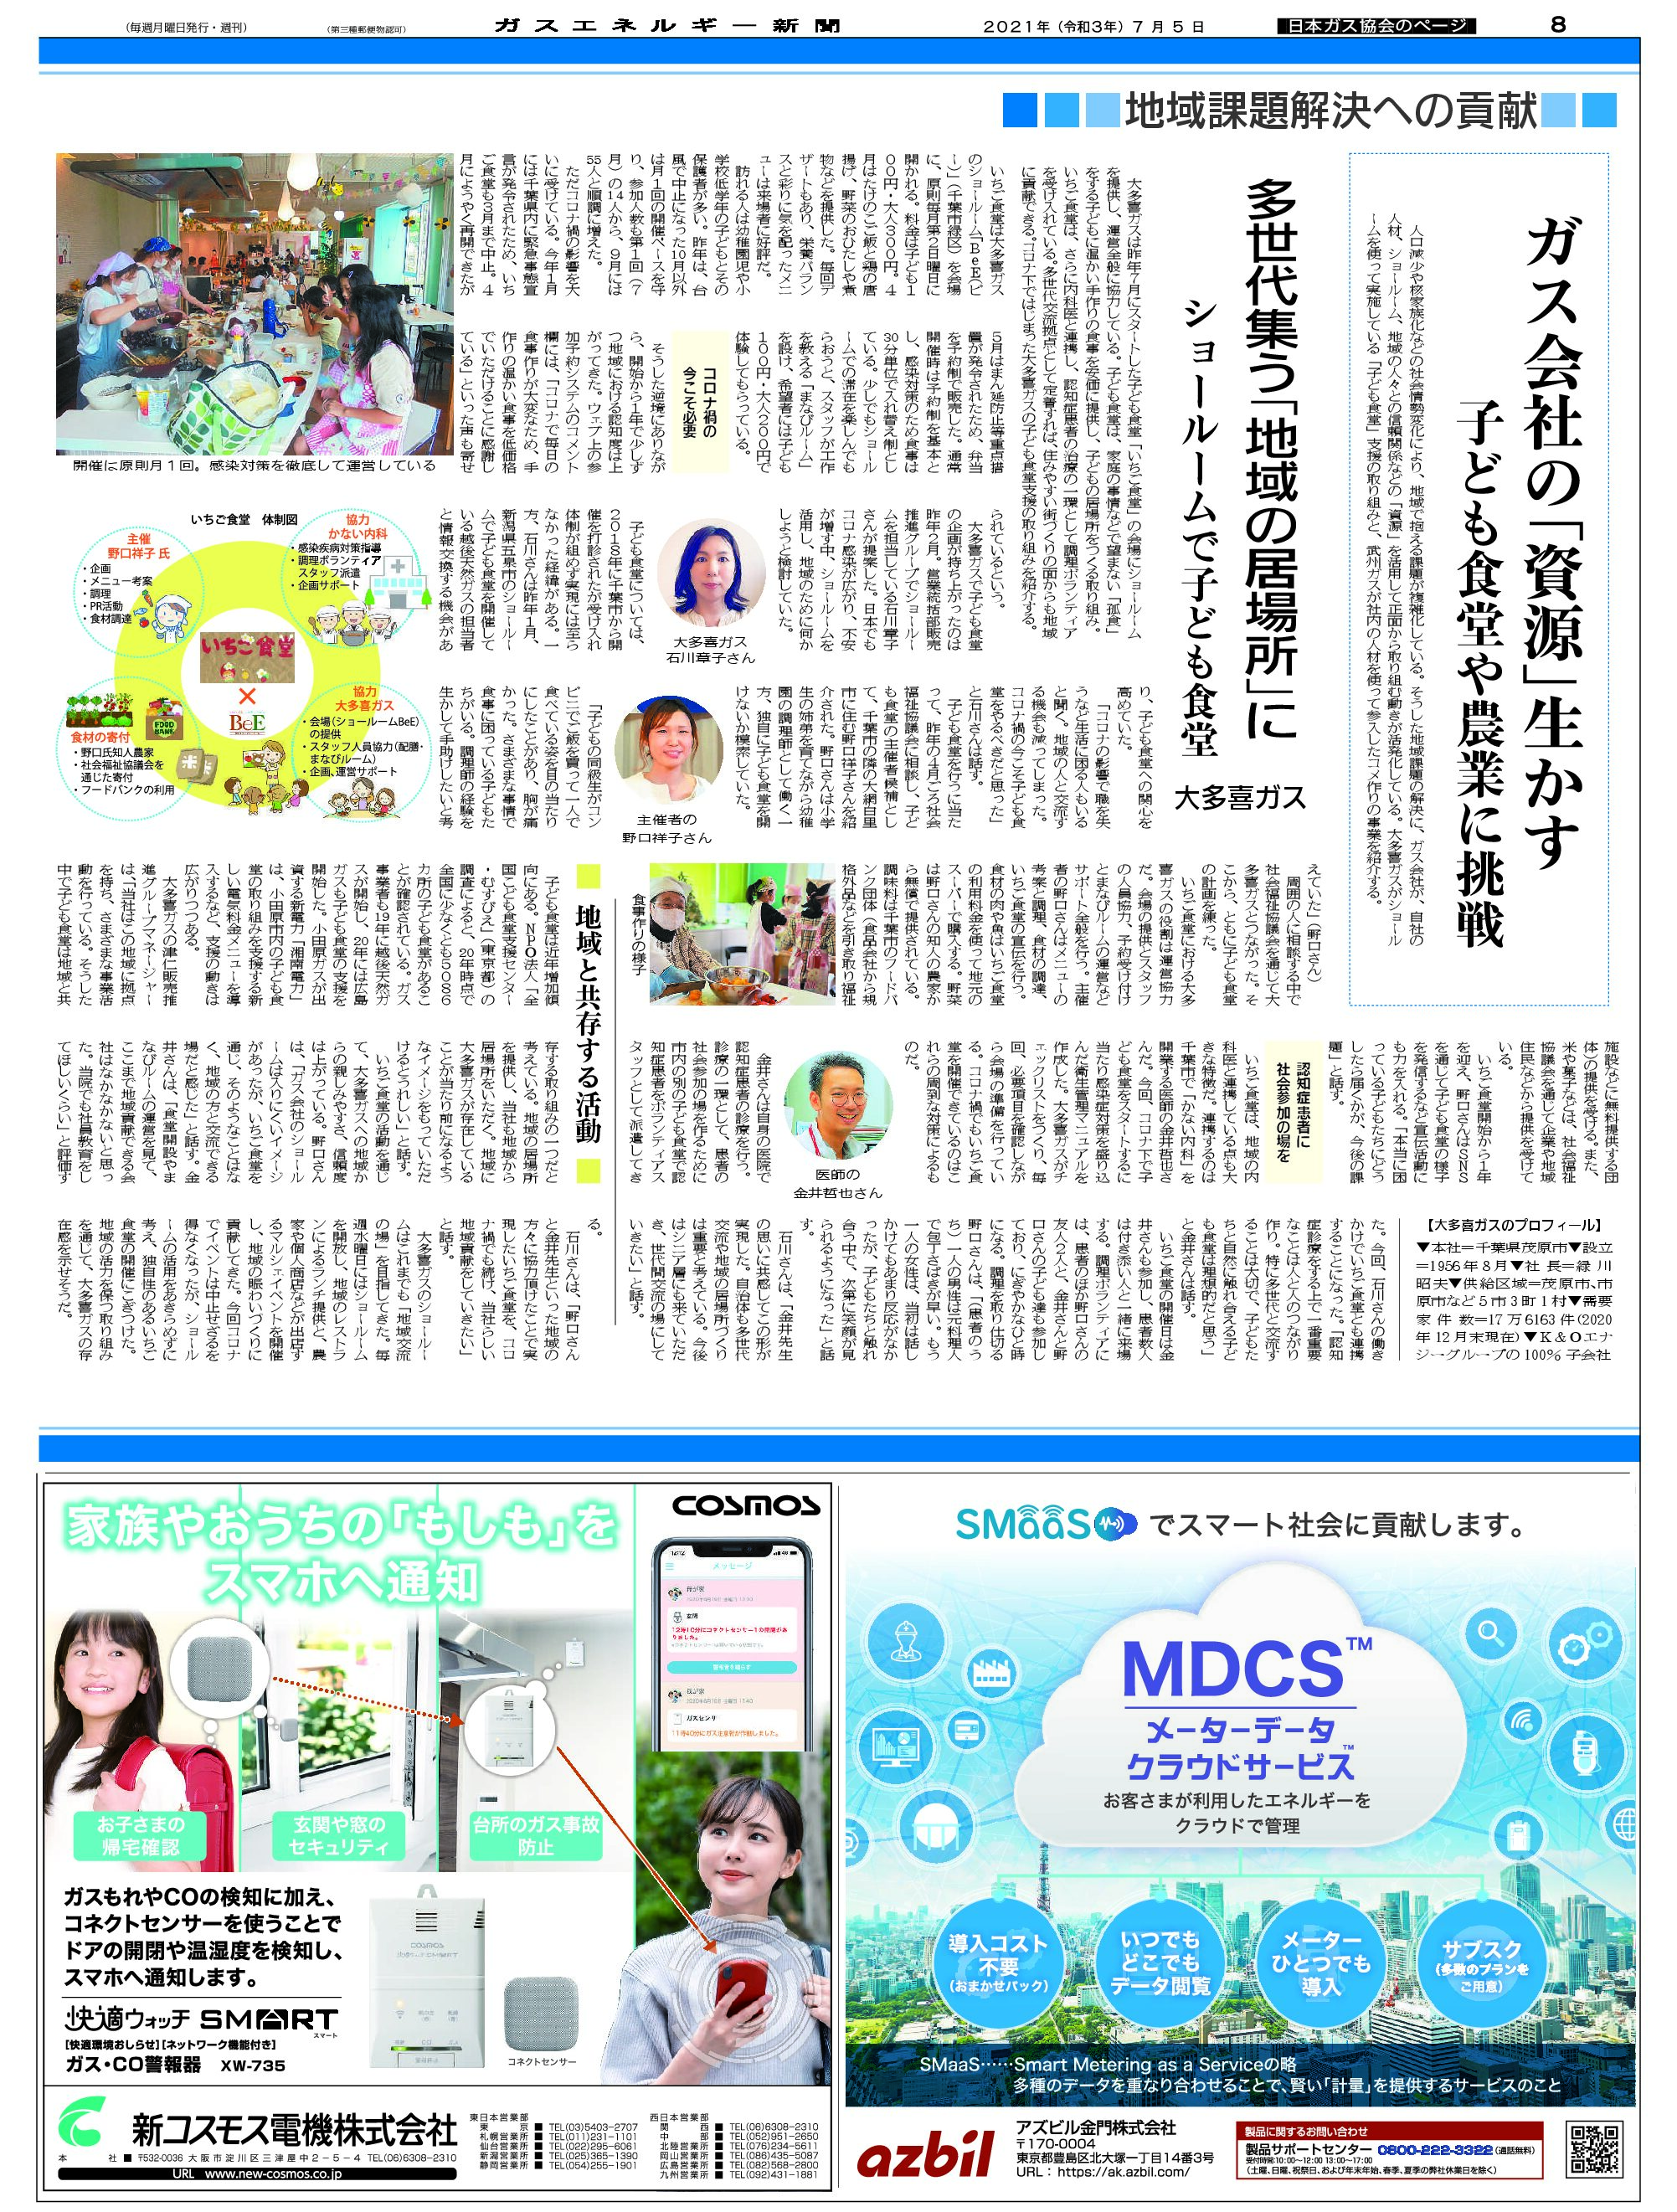 【日本ガス協会のページ】/地域課題解決への貢献(事例1)大多喜ガス-ガス会社の「資源」生かす、子ども食堂や農業に挑戦